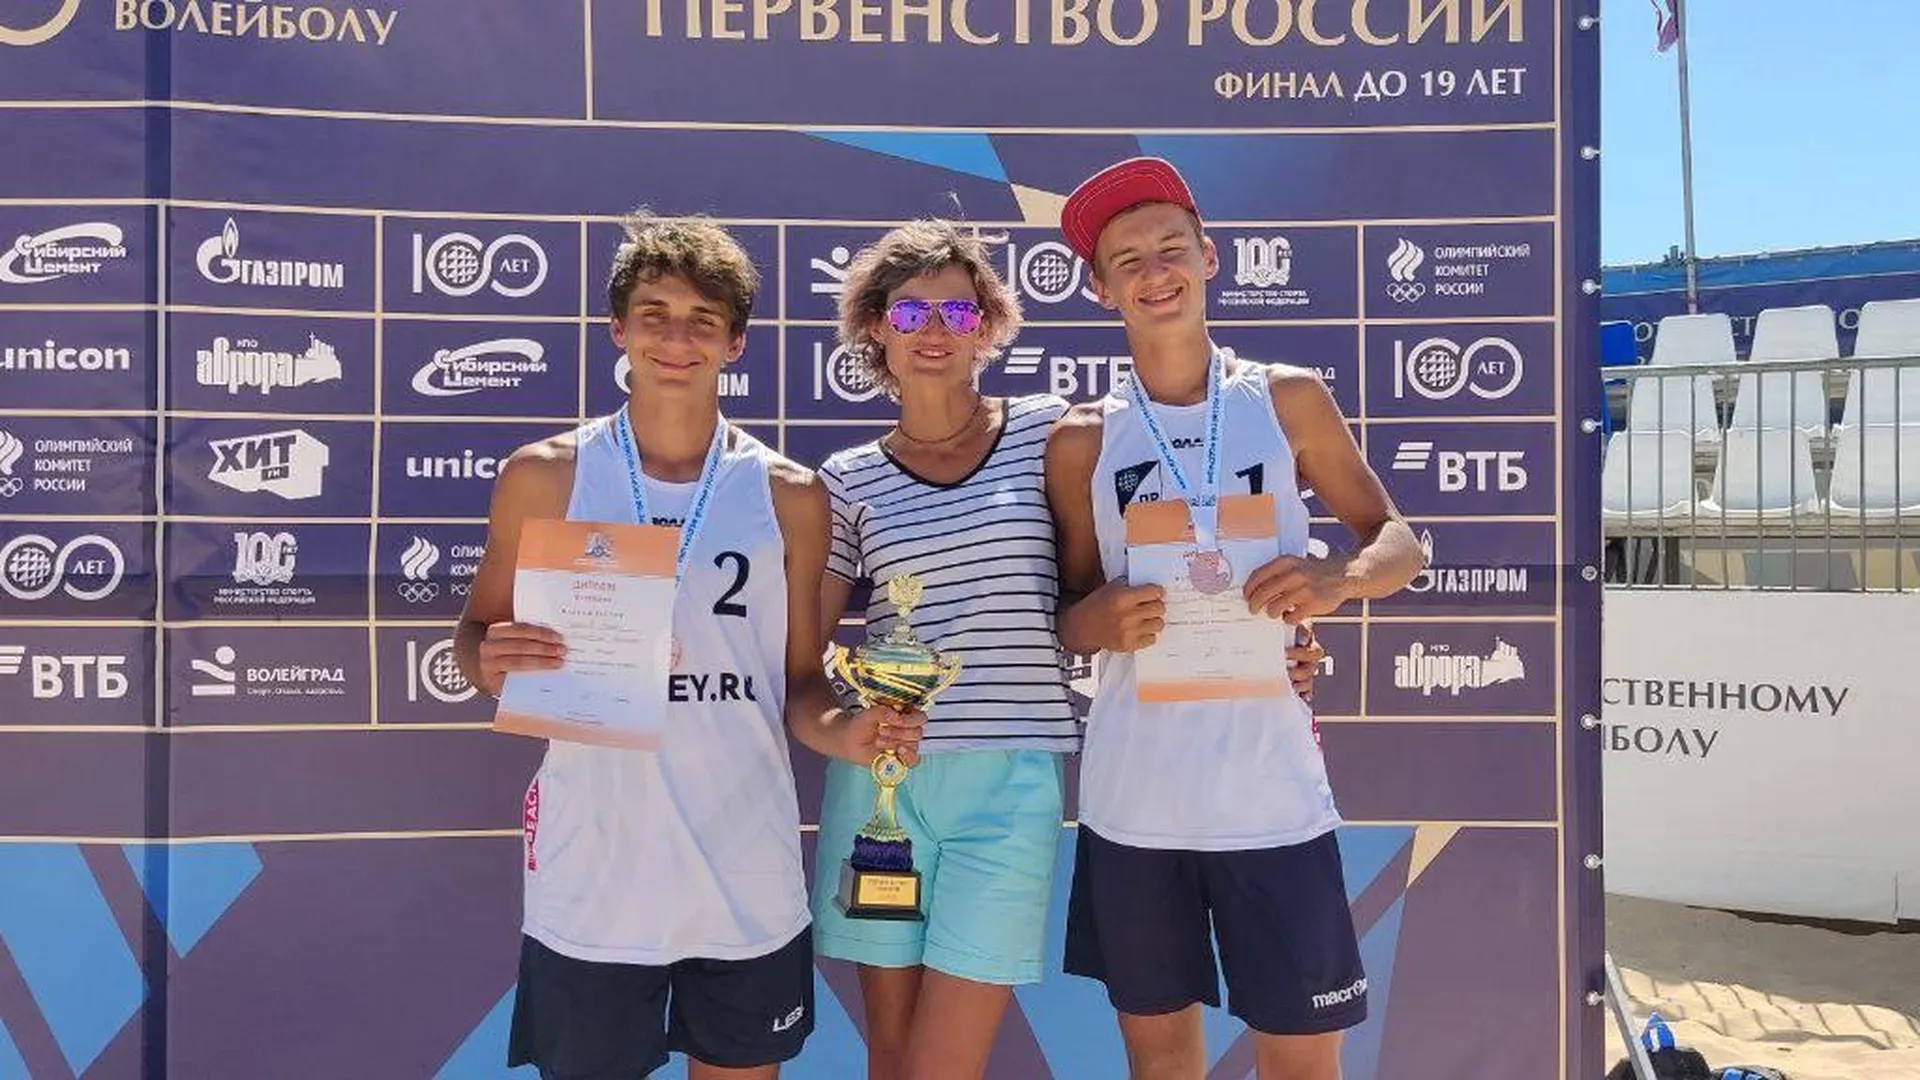 Студенты из Подмосковья завоевали бронзу на соревнованиях по пляжному волейболу